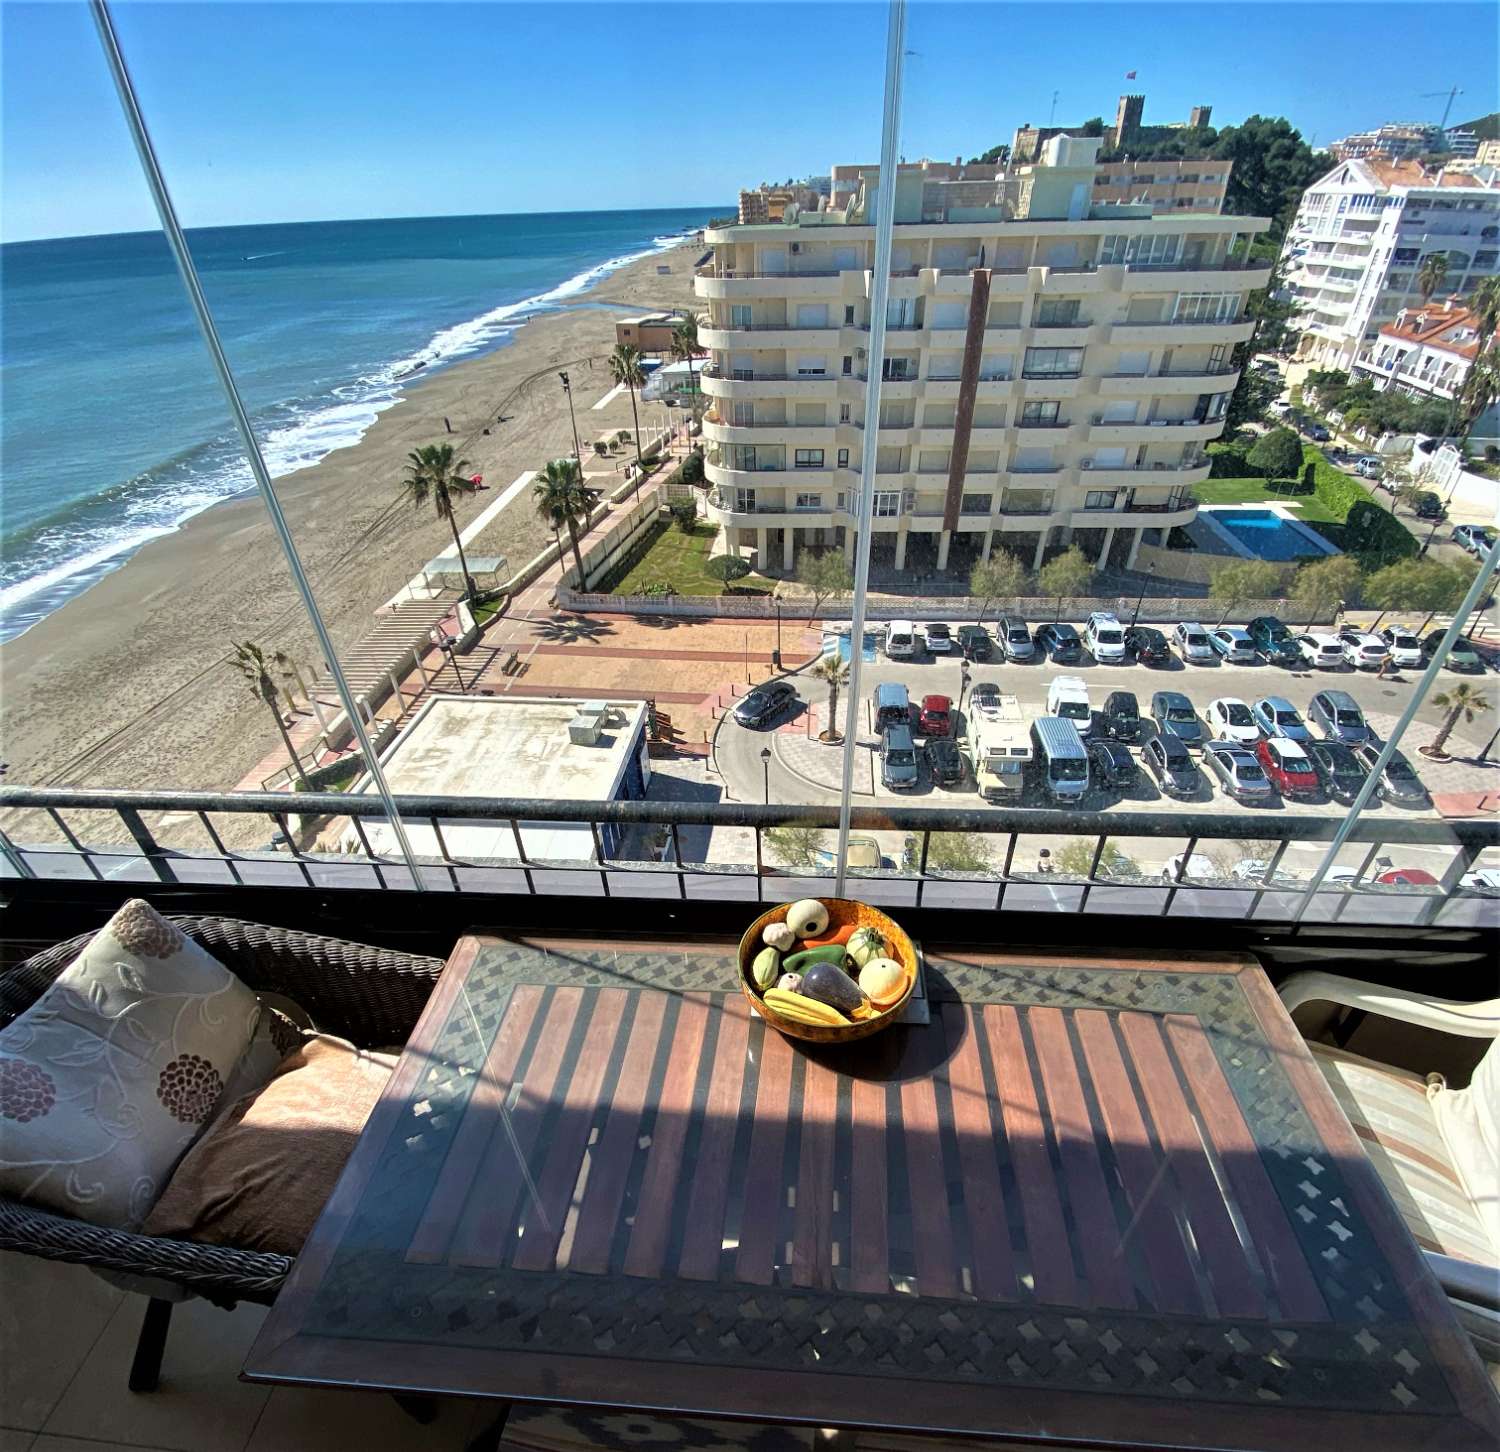 Fuengirola, 1 camera da letto, vista panoramica, Wi-Fi gratuito, piscina, spiaggia di prima linea.